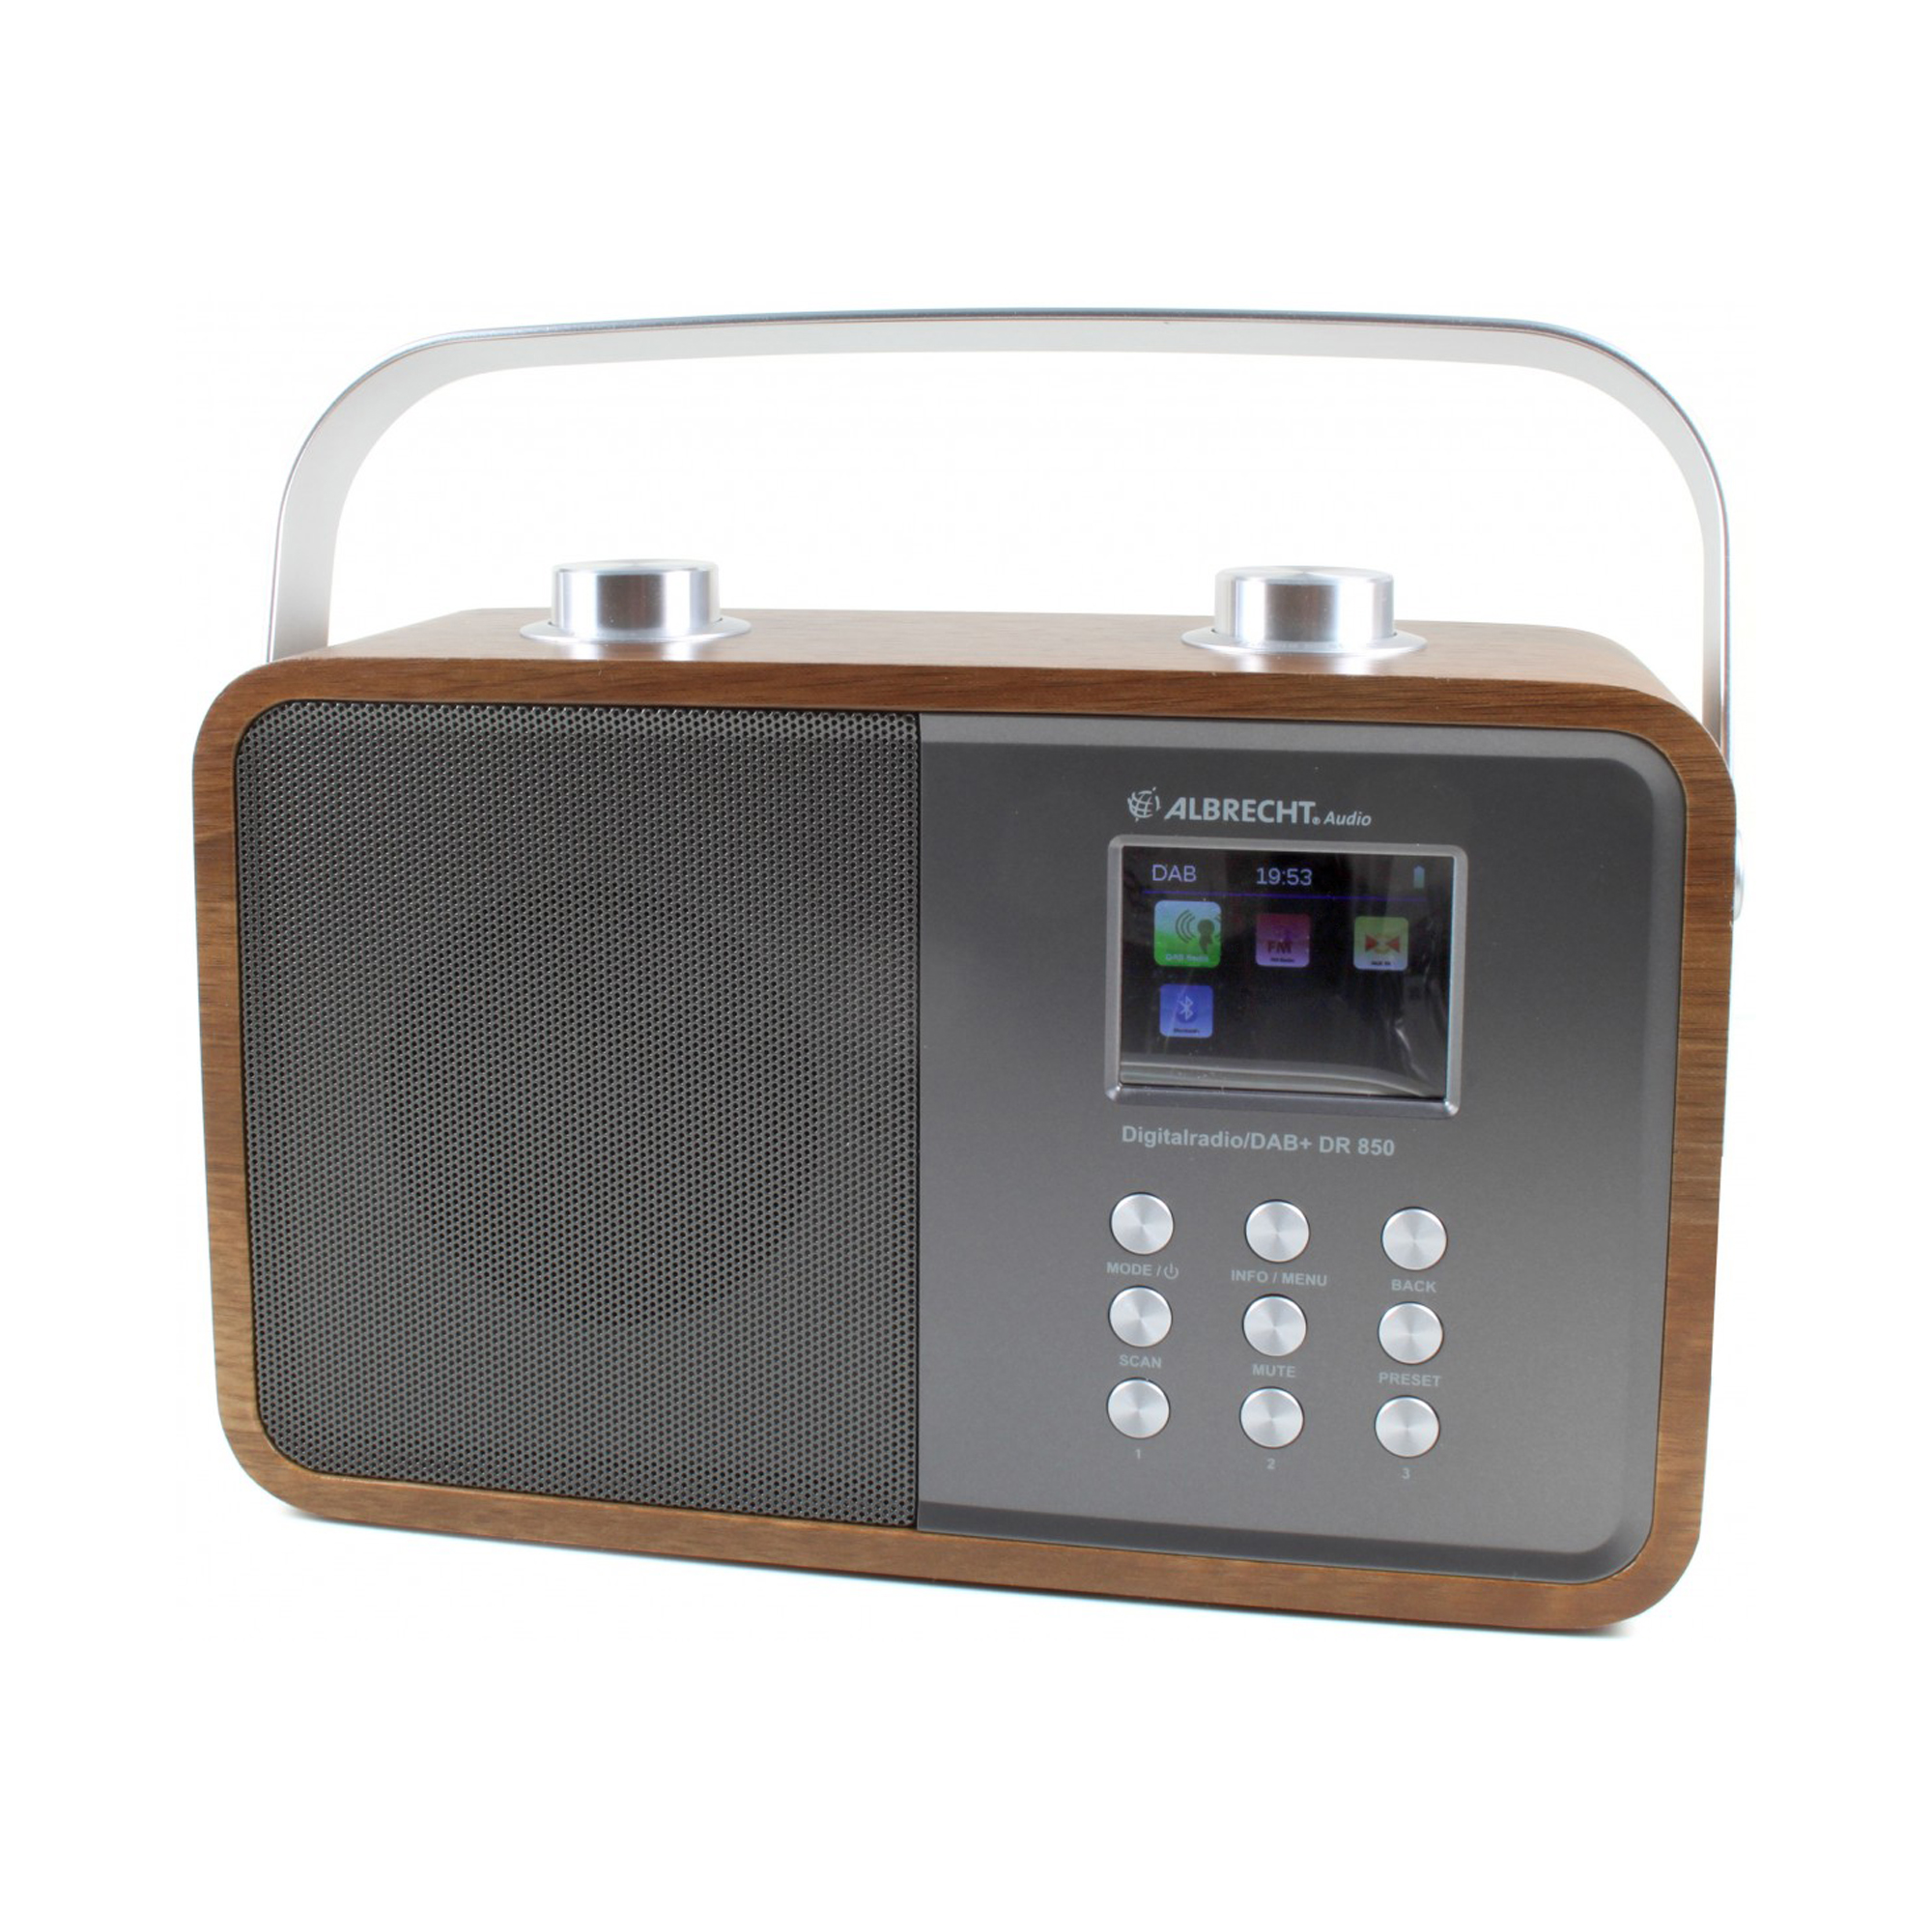 Radio digital DAB si FM Albrecht DR 850 cu Bluetooth si display color 2.4 inch image5